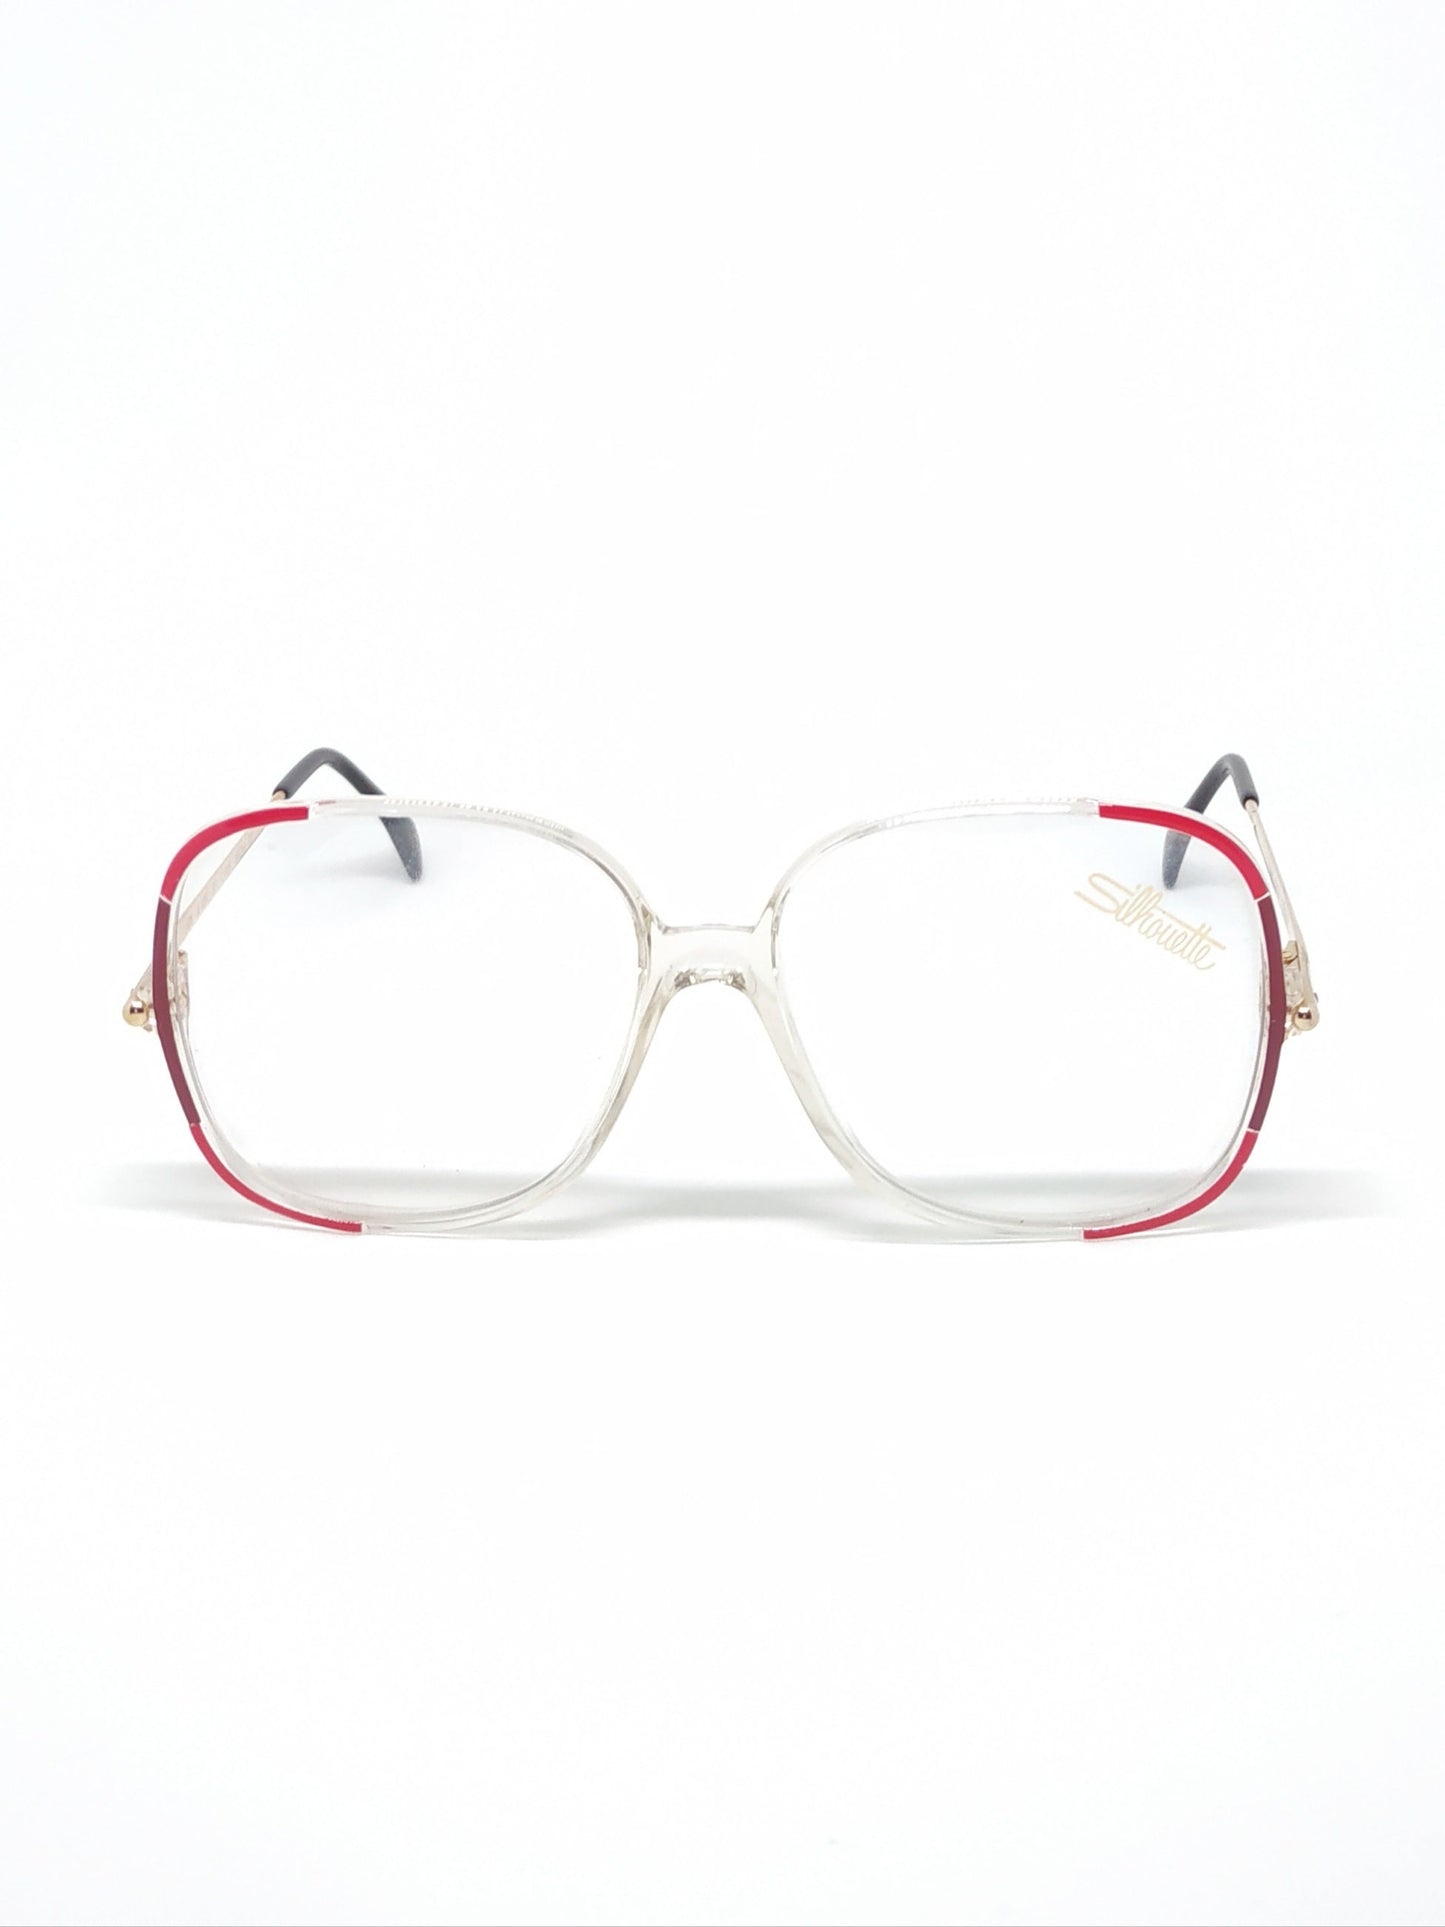 Vintage New old stock eyeglasses frames